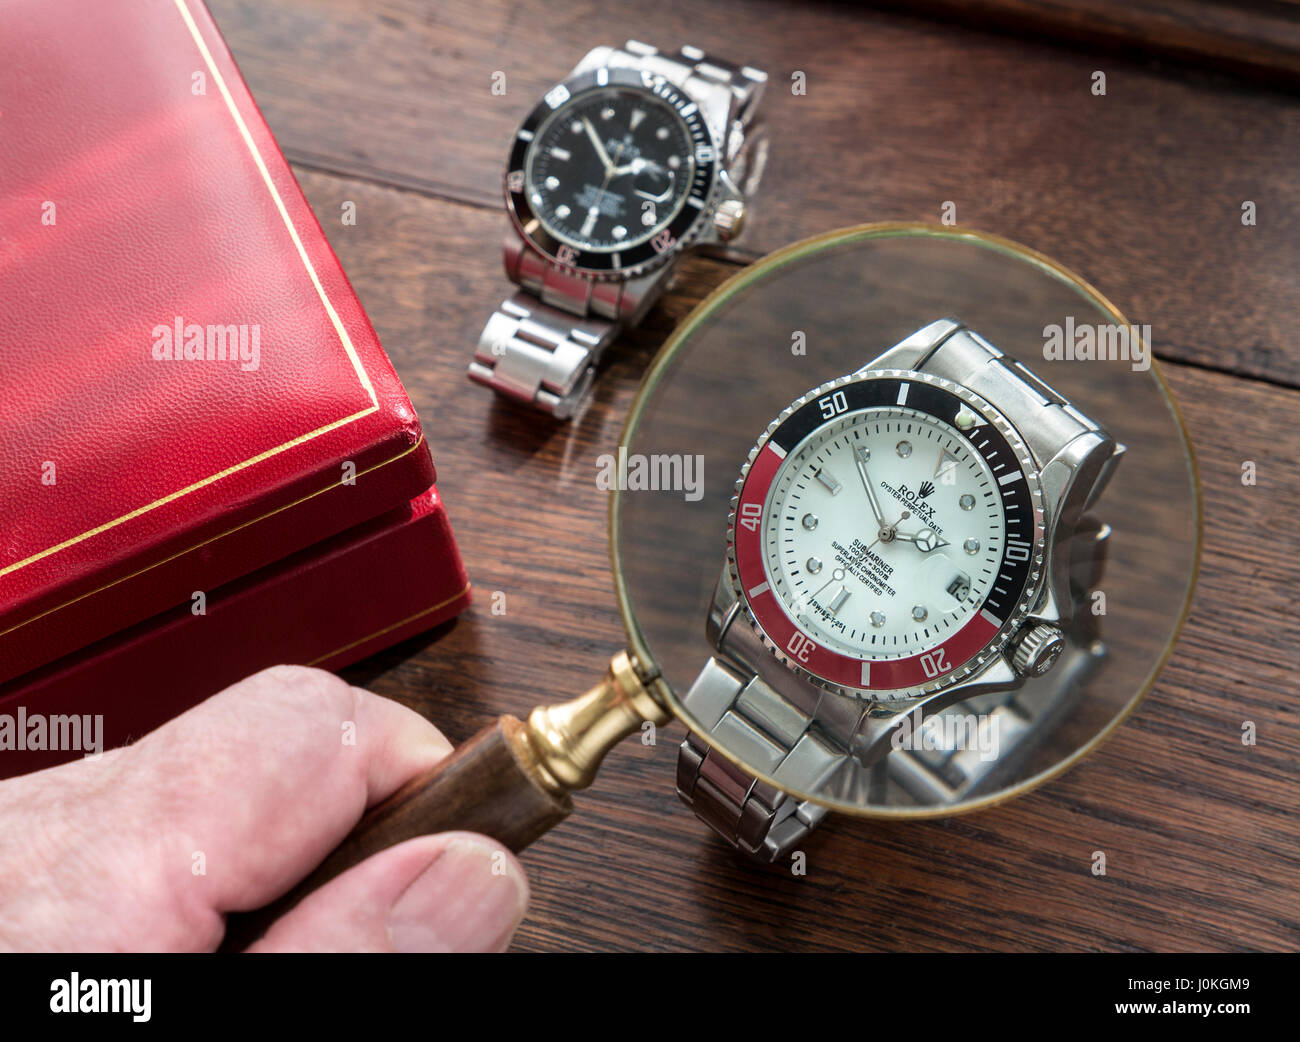 MONTRES ROLEX FAKE verre de loupe et faux copie de copie contrefaite homme montres Rolex sur le vieux bureau en bois avec étui de montre en cuir rouge Banque D'Images